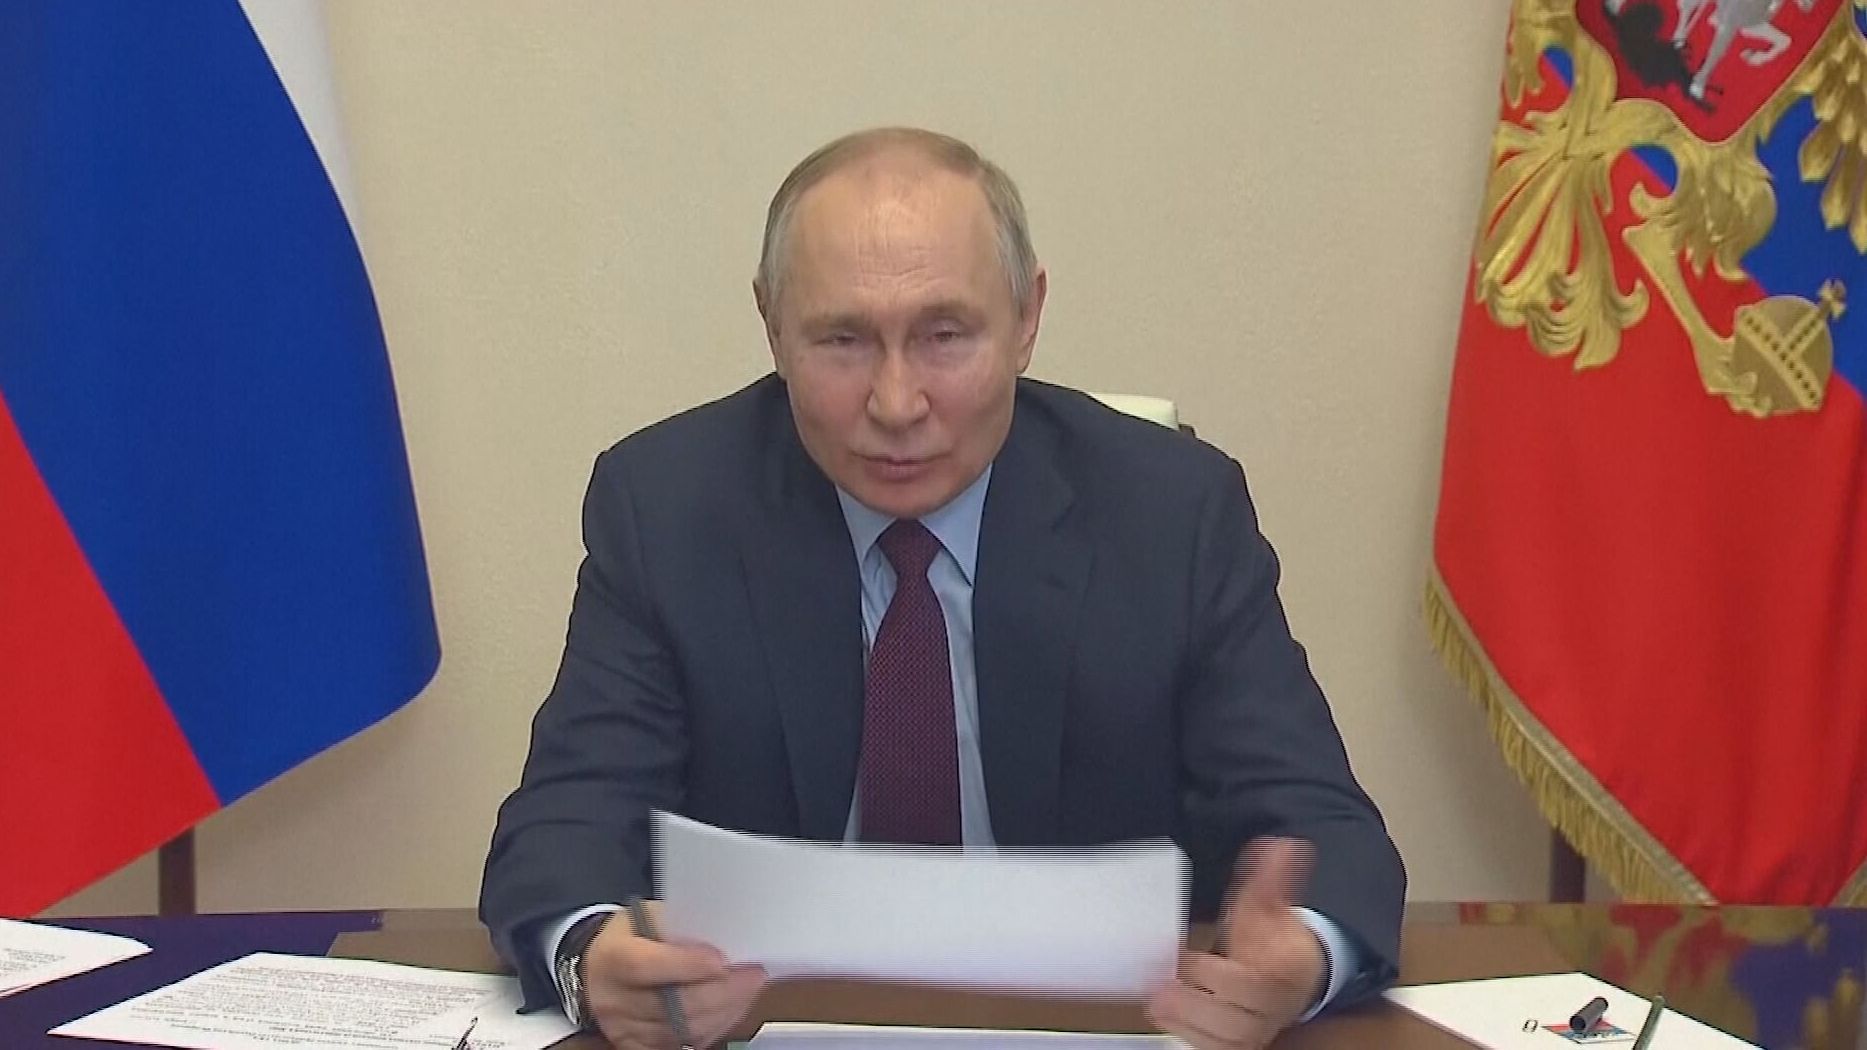 Putin humilla en público a un viceprimer ministro ruso: "¿Por qué te haces el tonto?"